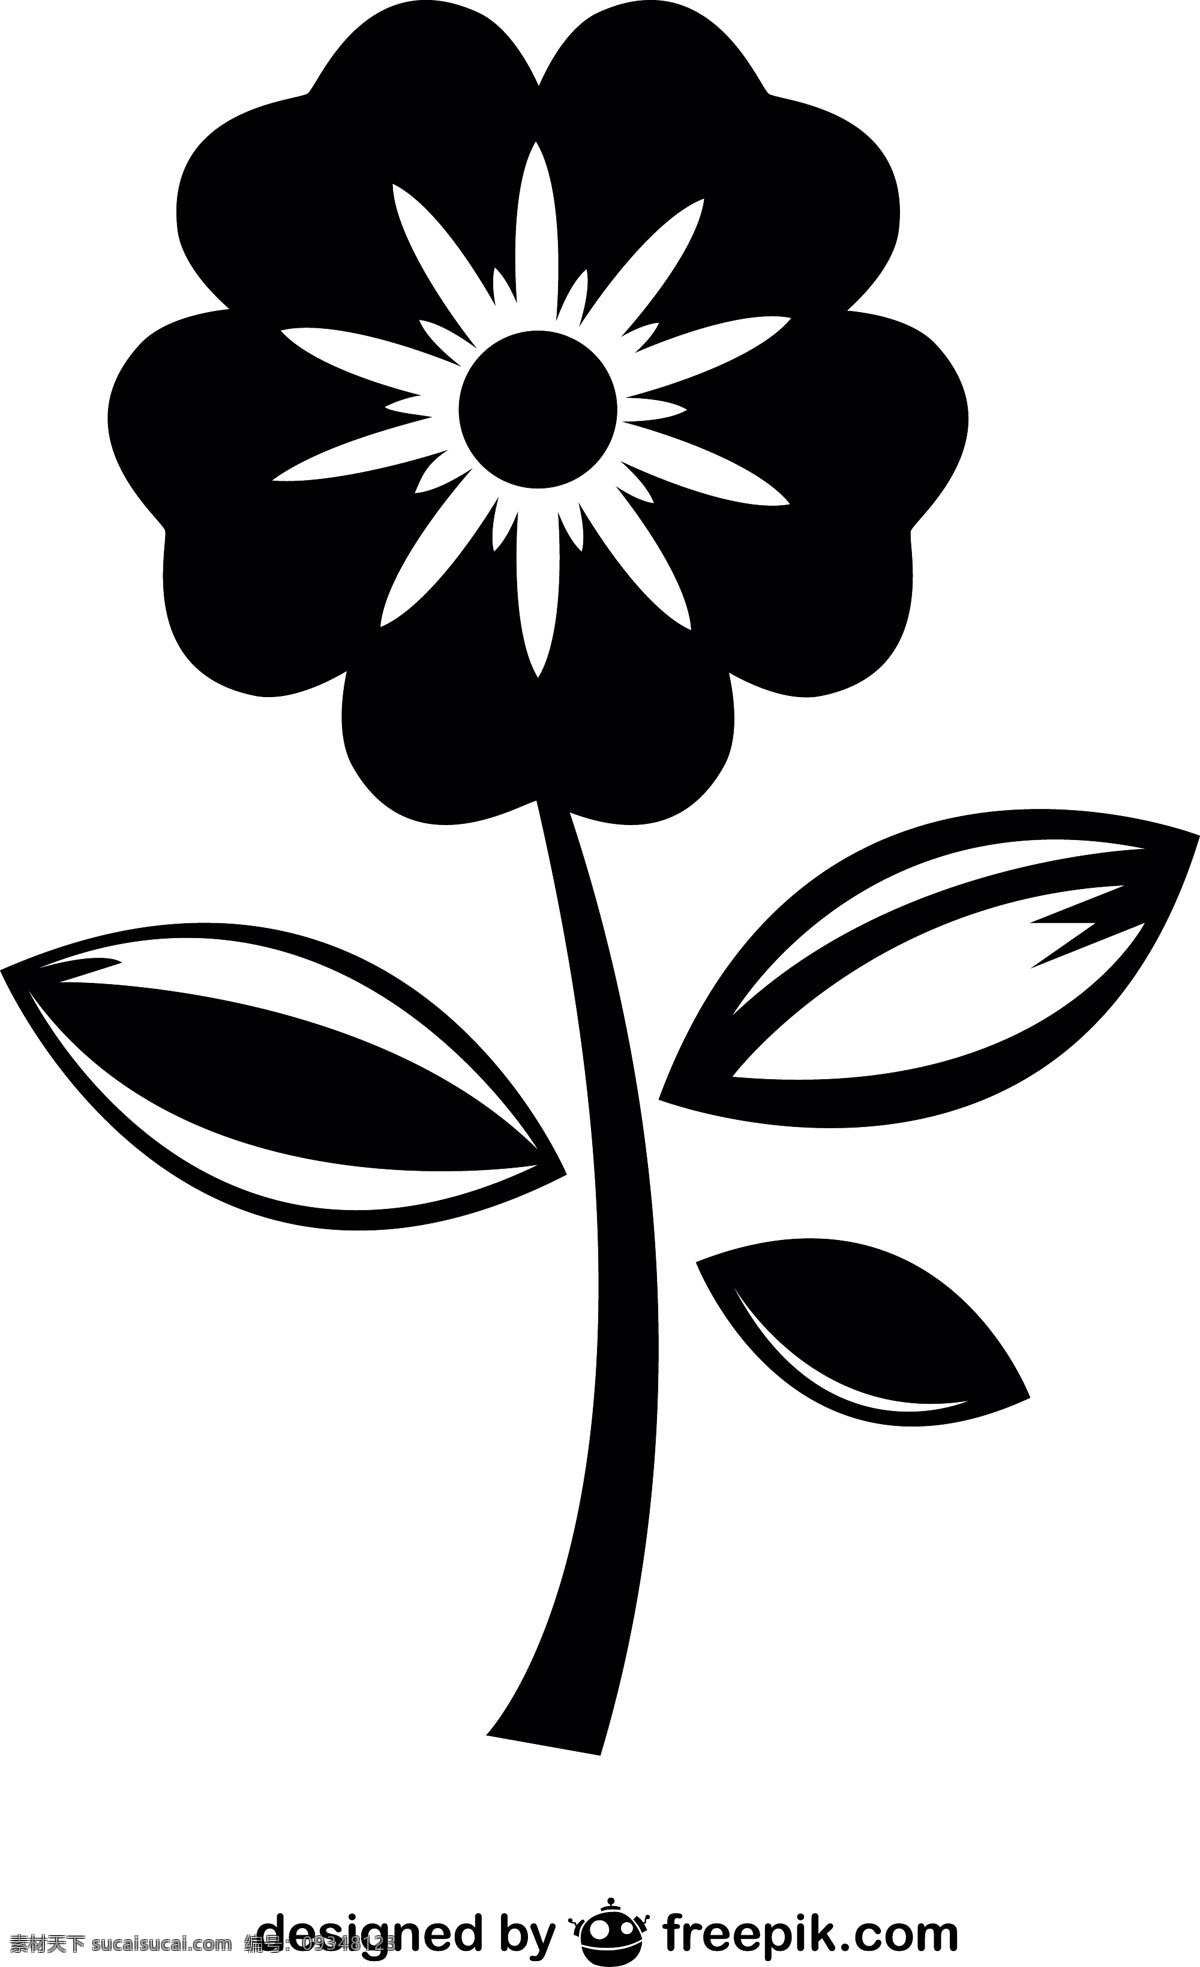 美丽 花朵 图标 花 自然 弹簧 平面 轮廓 平面设计 黑色 元素 象形文字 设计元素 图形 符号 绽放 白色